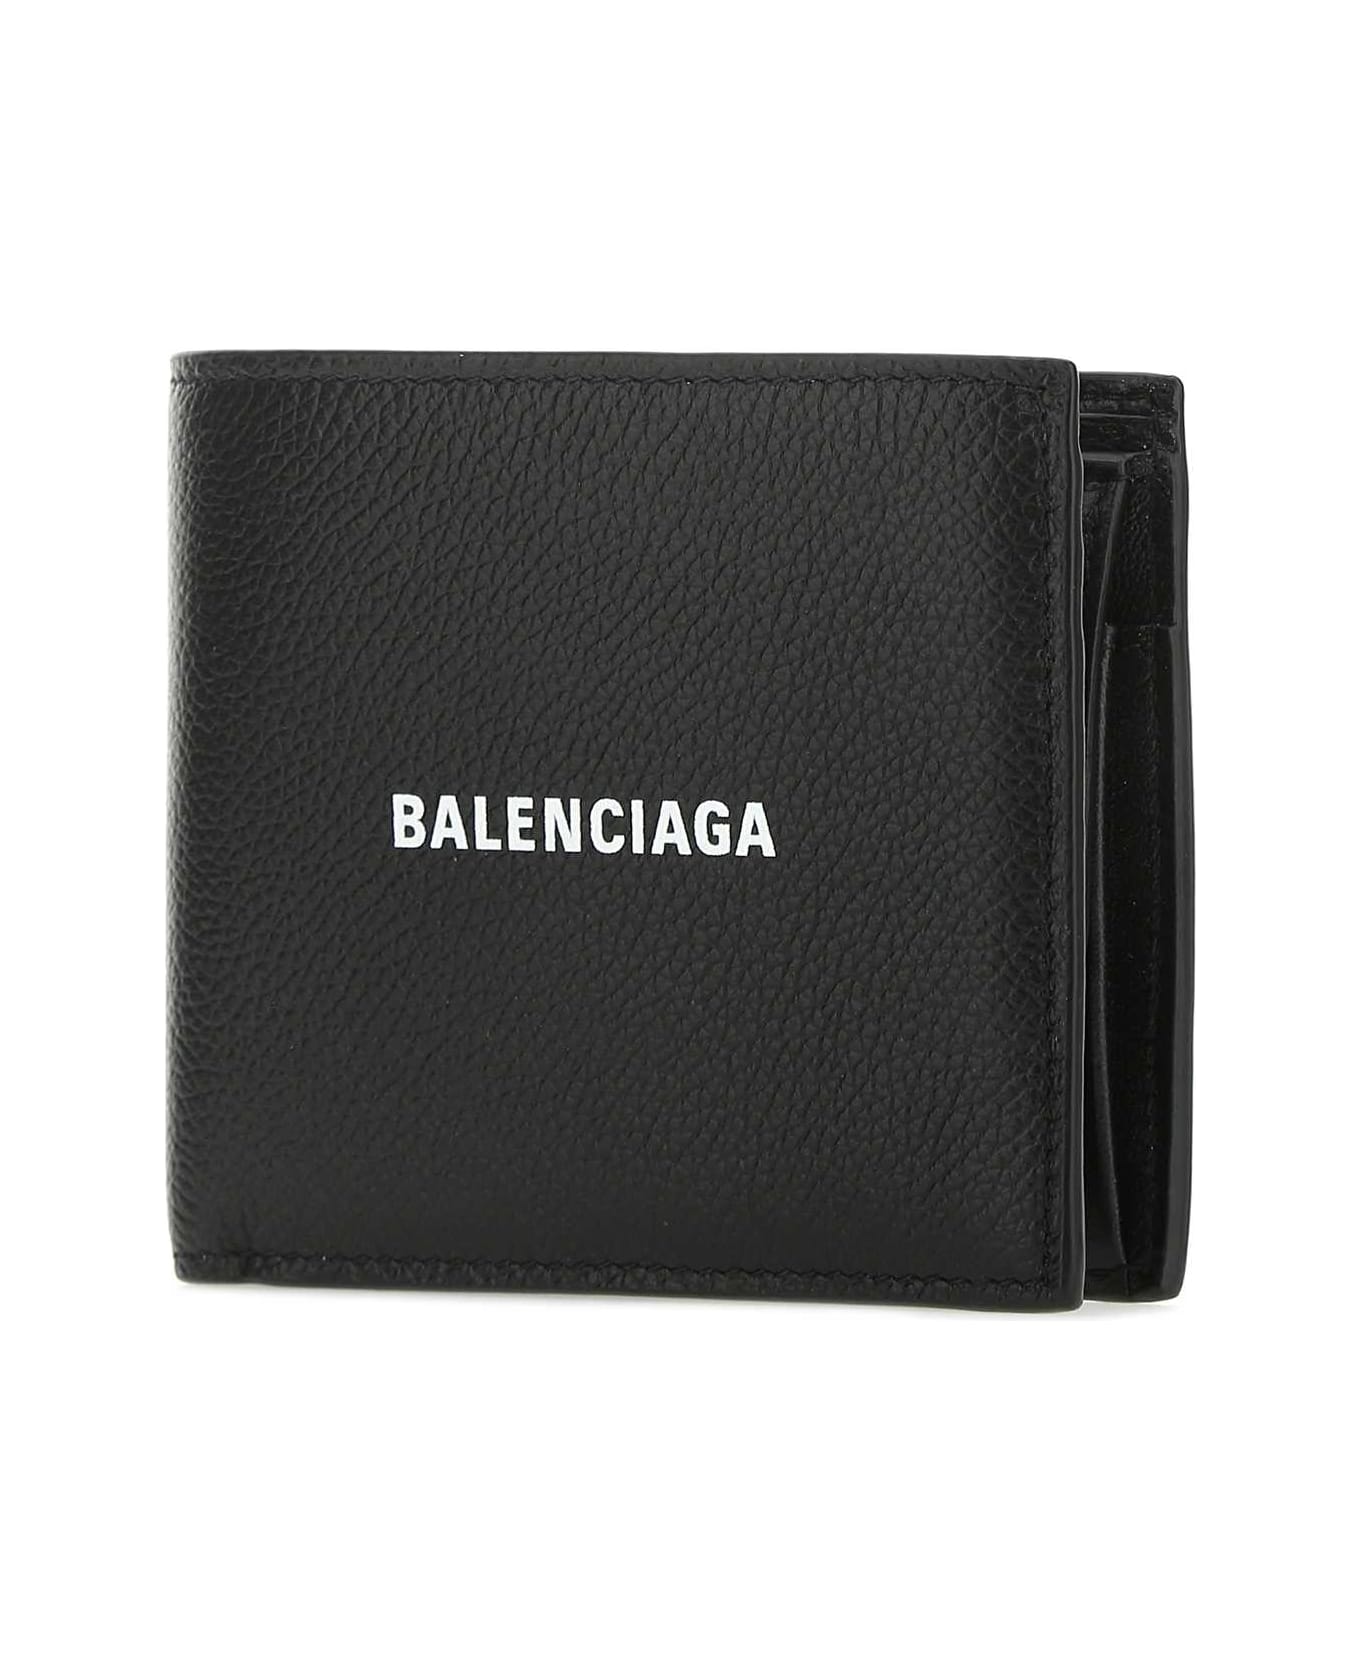 Balenciaga Black Leather Wallet - 1090